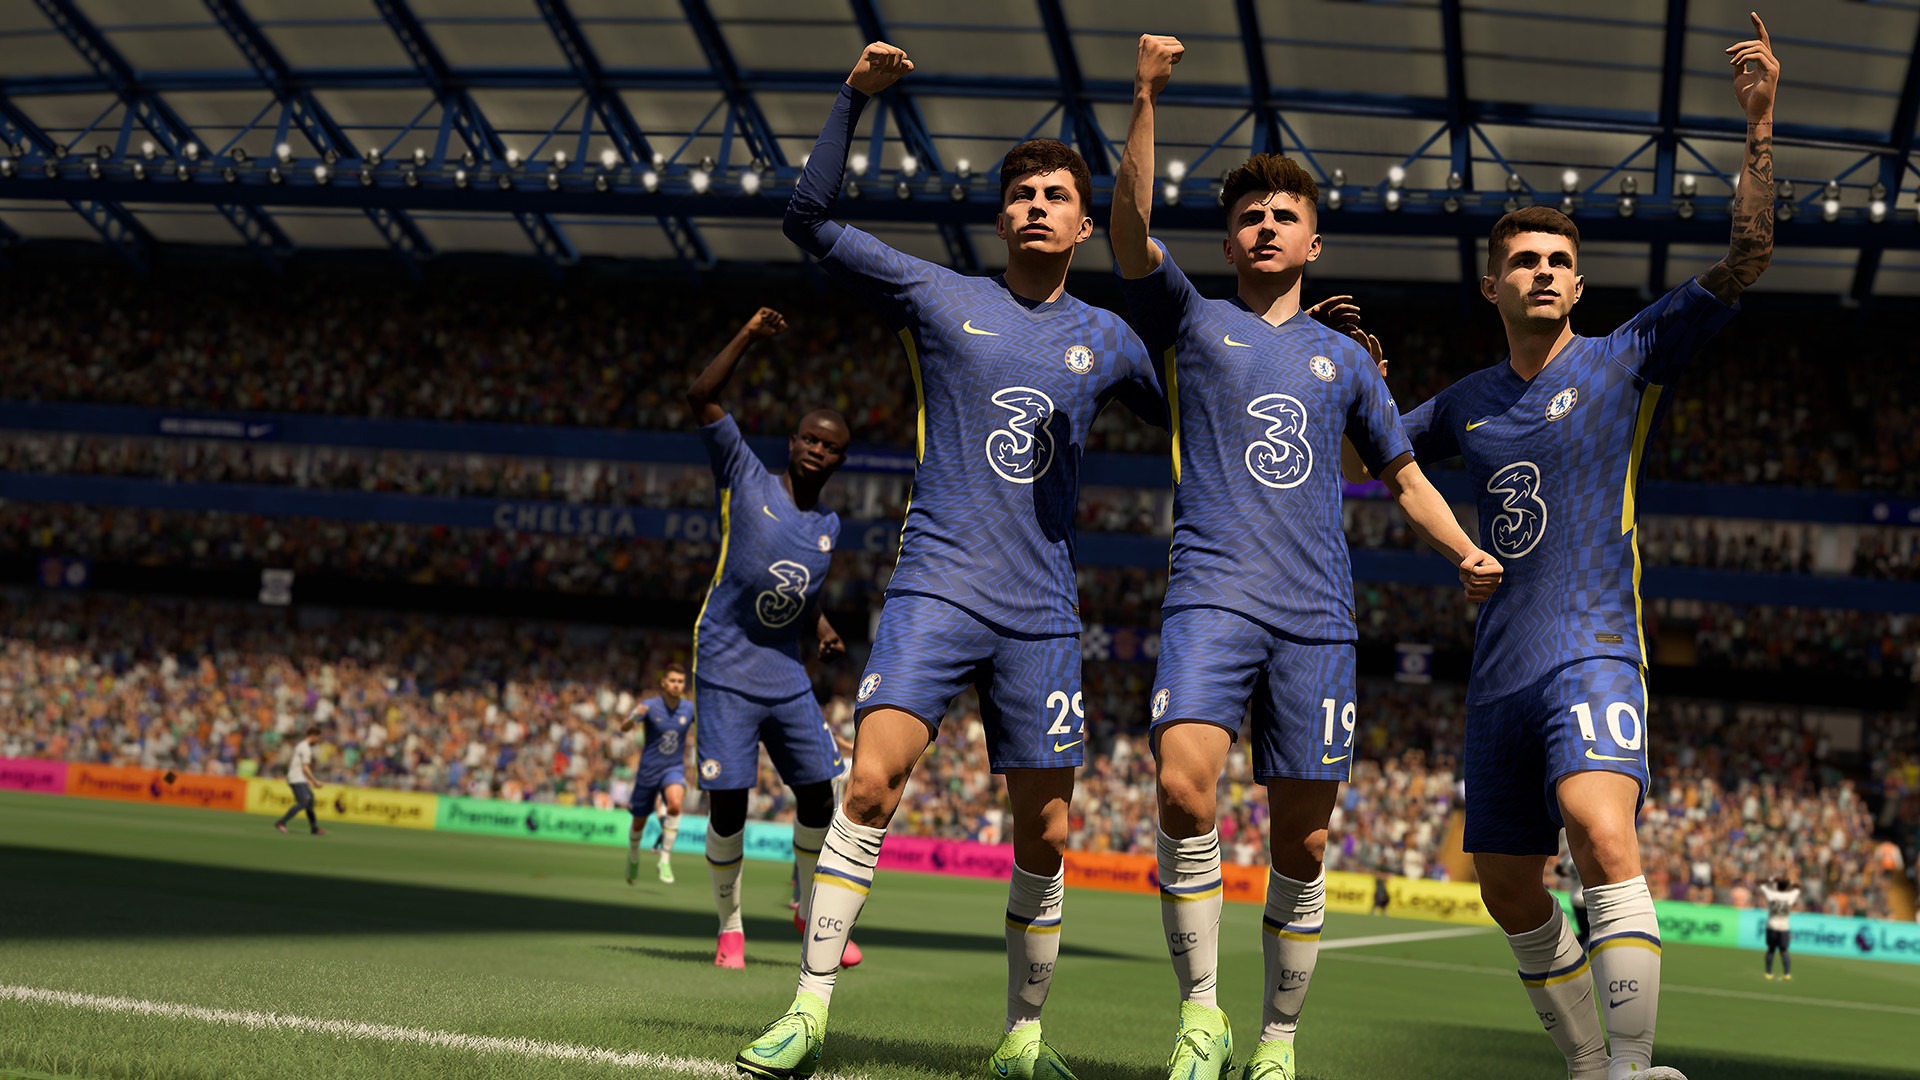 Neste guia, abordaremos os objetivos e recompensas do modo de jogo Captain Fantastic FIFA 22, bem como seus prós e contras de acordo com a maioria dos fãs.